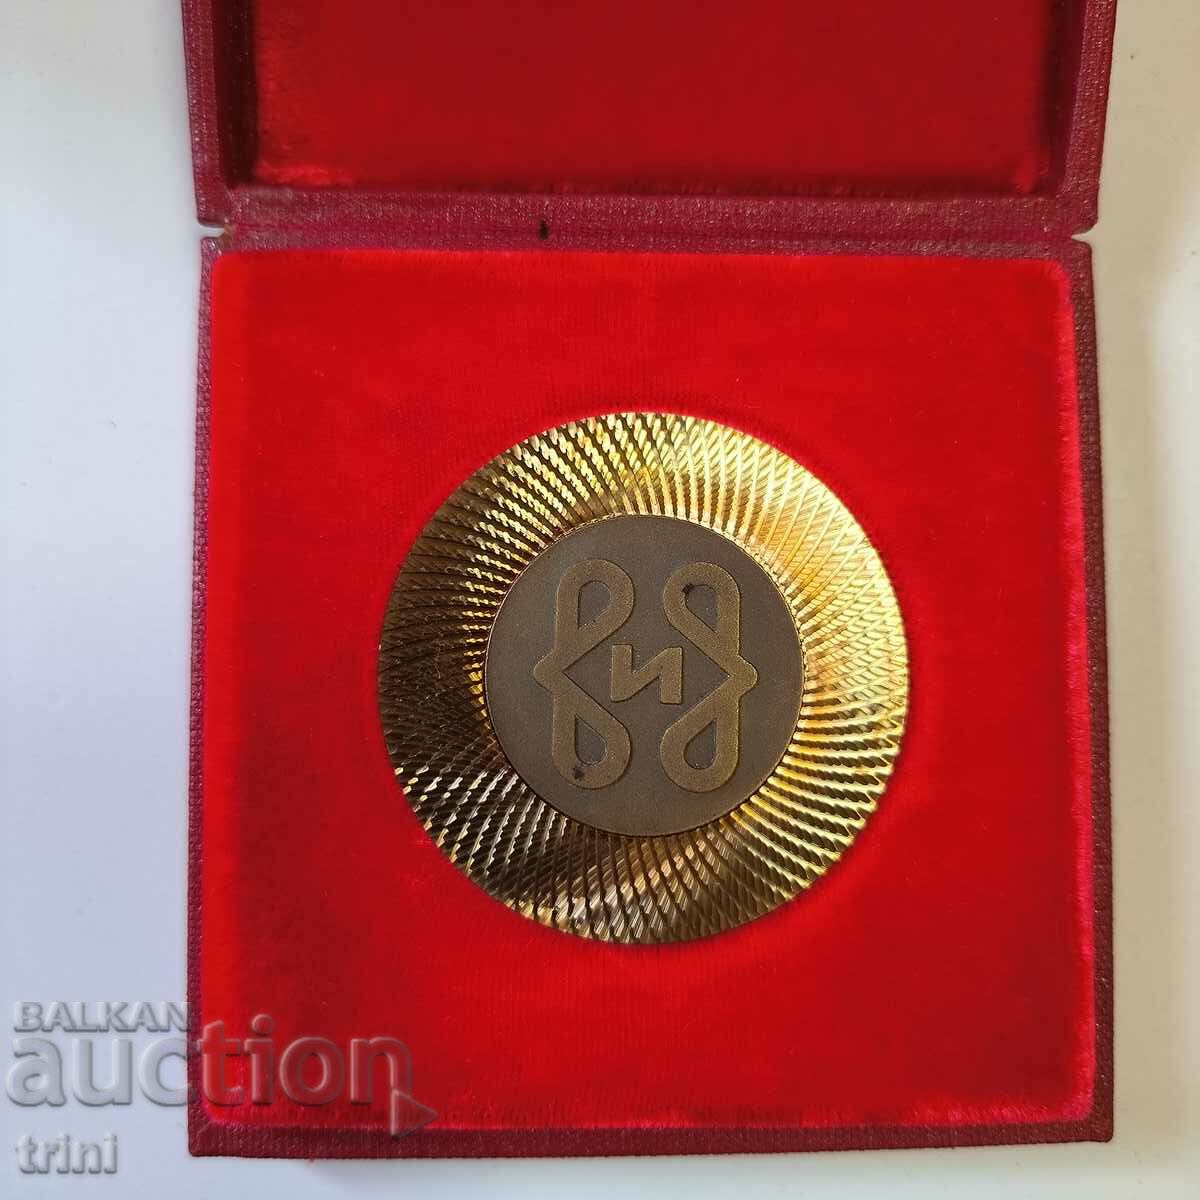 ΤΡΑΠΕΖΙΟ μετάλλιο 50. Παραγωγή καλτσών 1980.